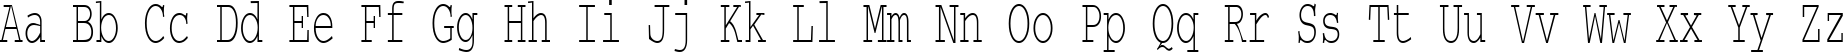 Пример написания английского алфавита шрифтом CourierCTT_60